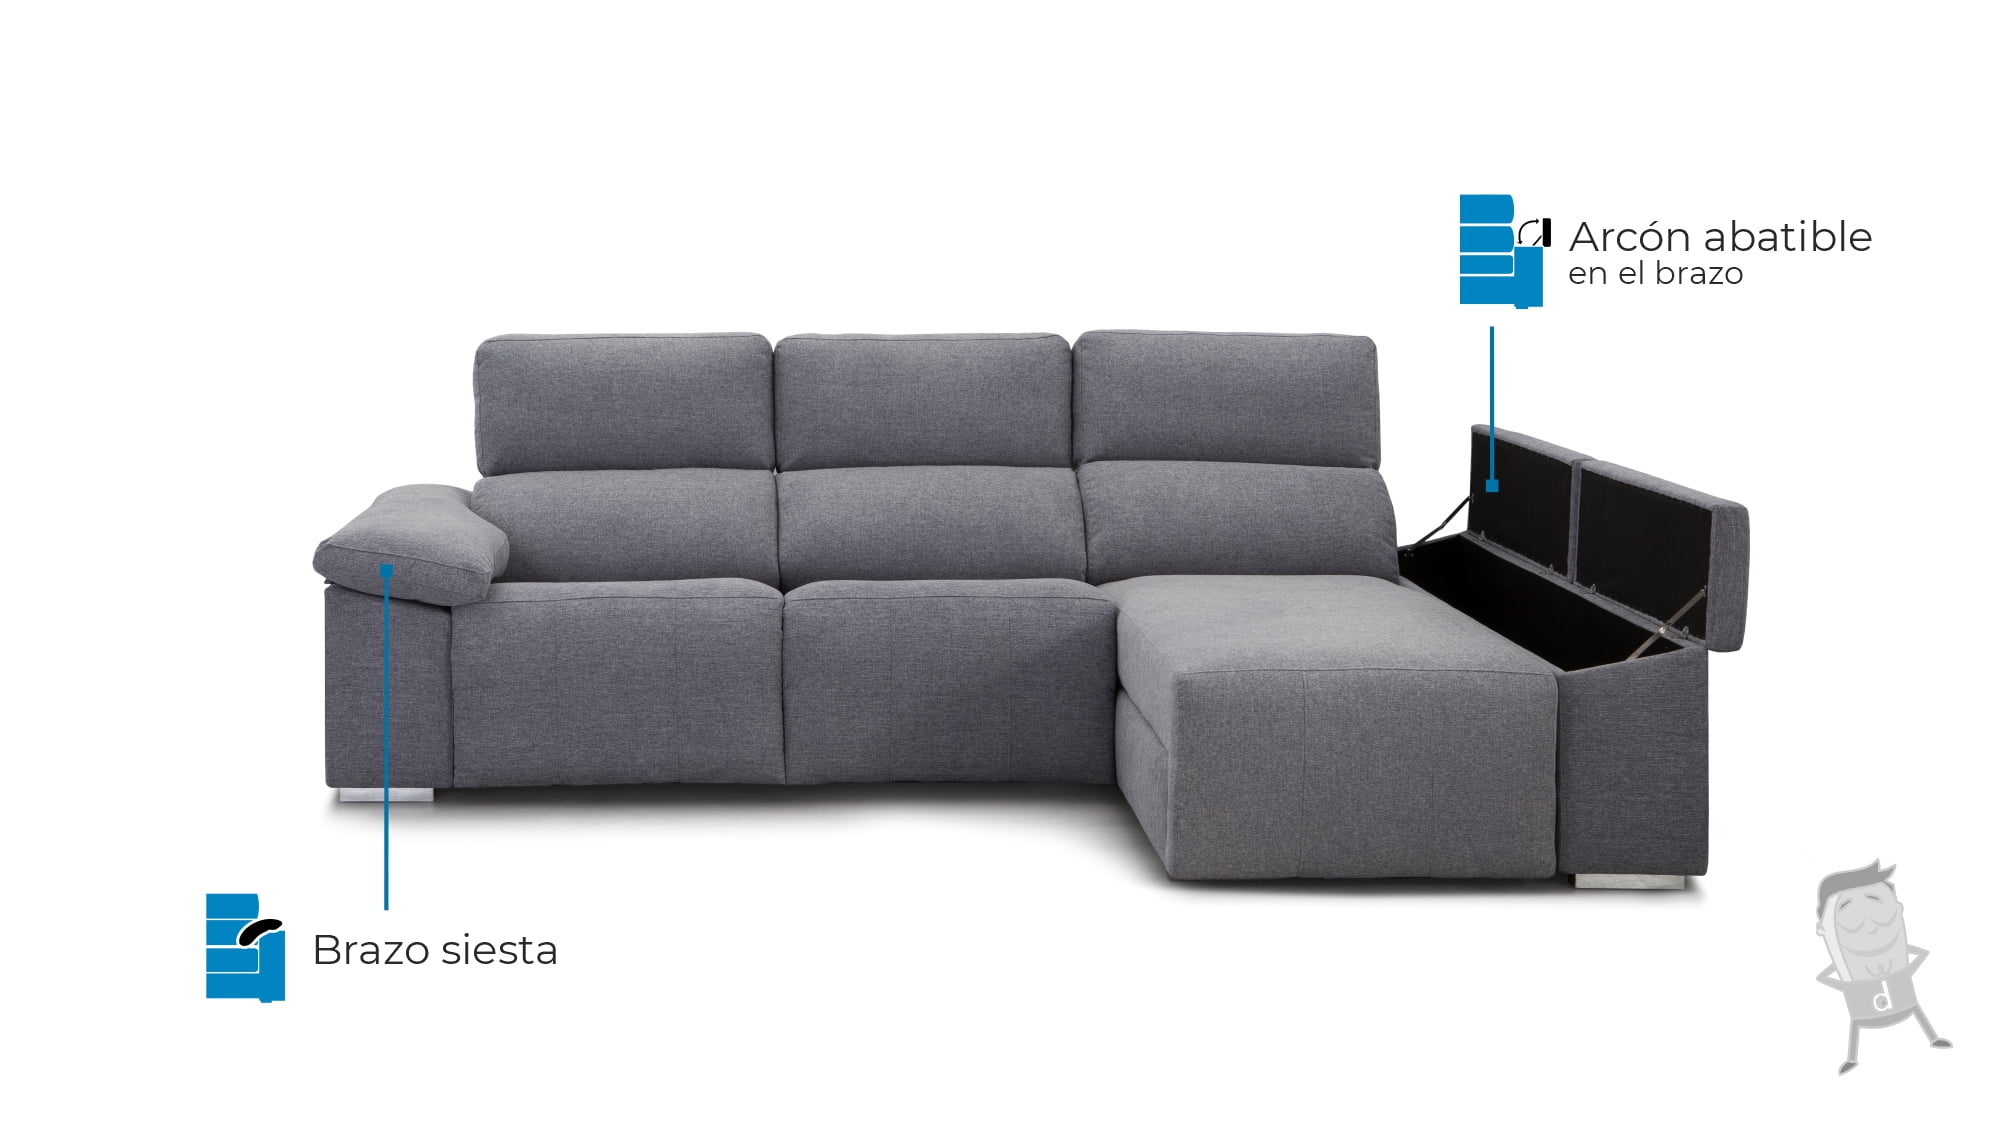 Sofa chaise longue con asientos electricos reclinables Poseidón caracteristicas 2